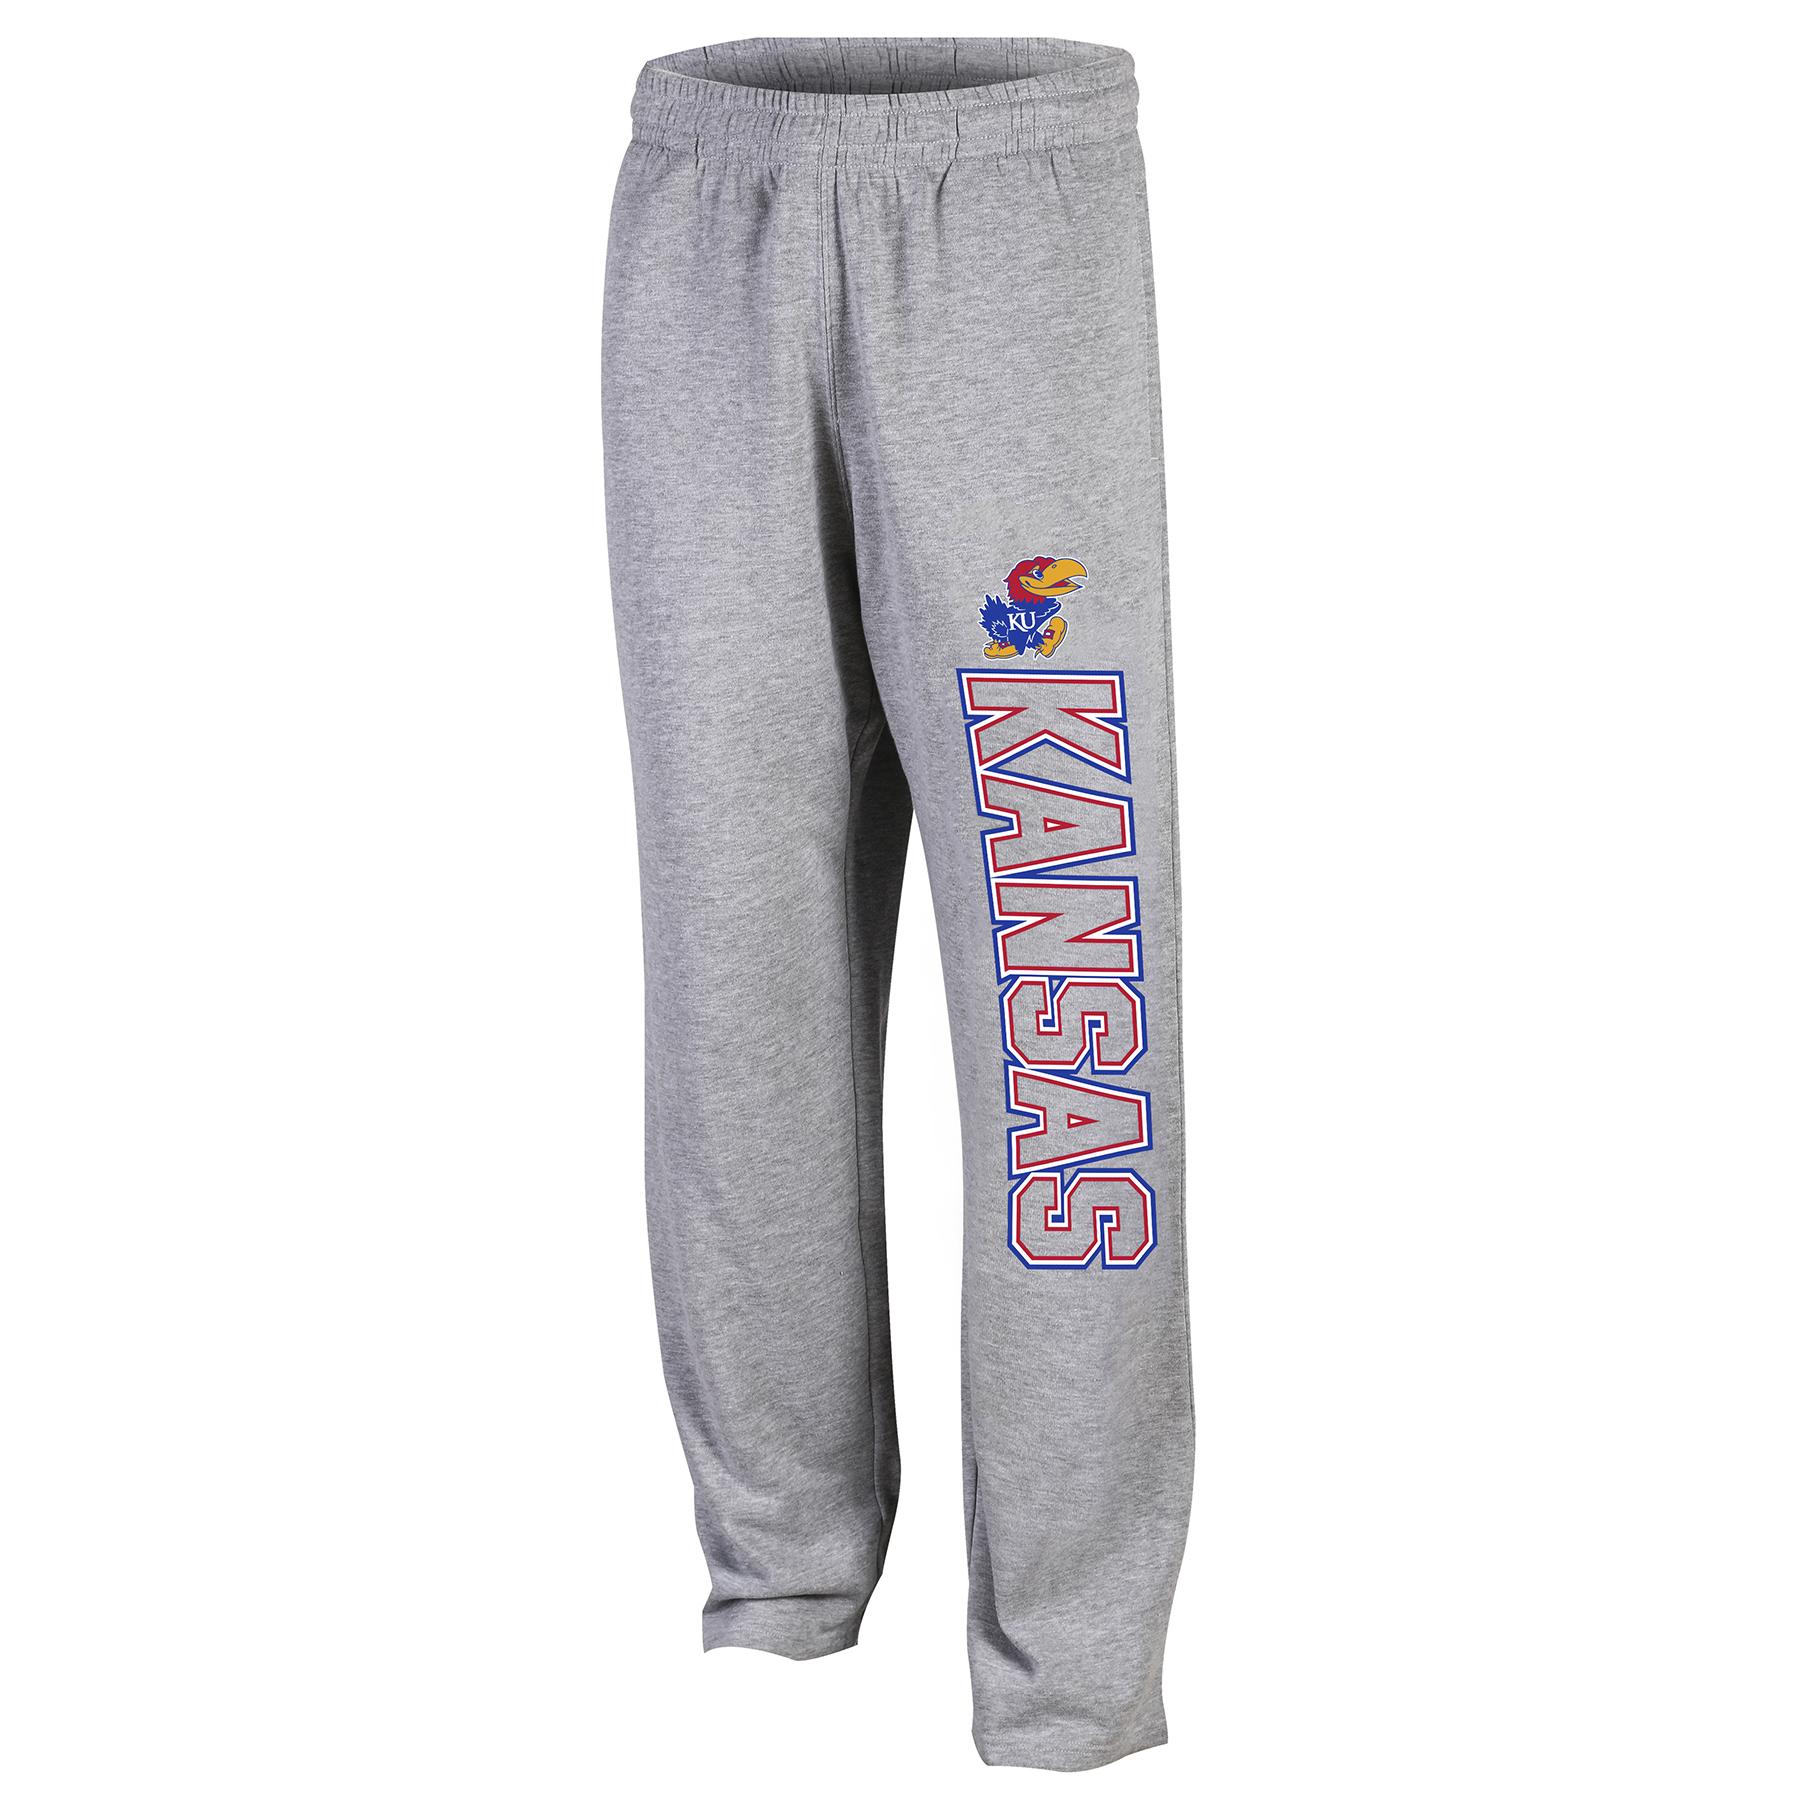 NCAA Men's Sweatpants - University of Kansas Jayhawks